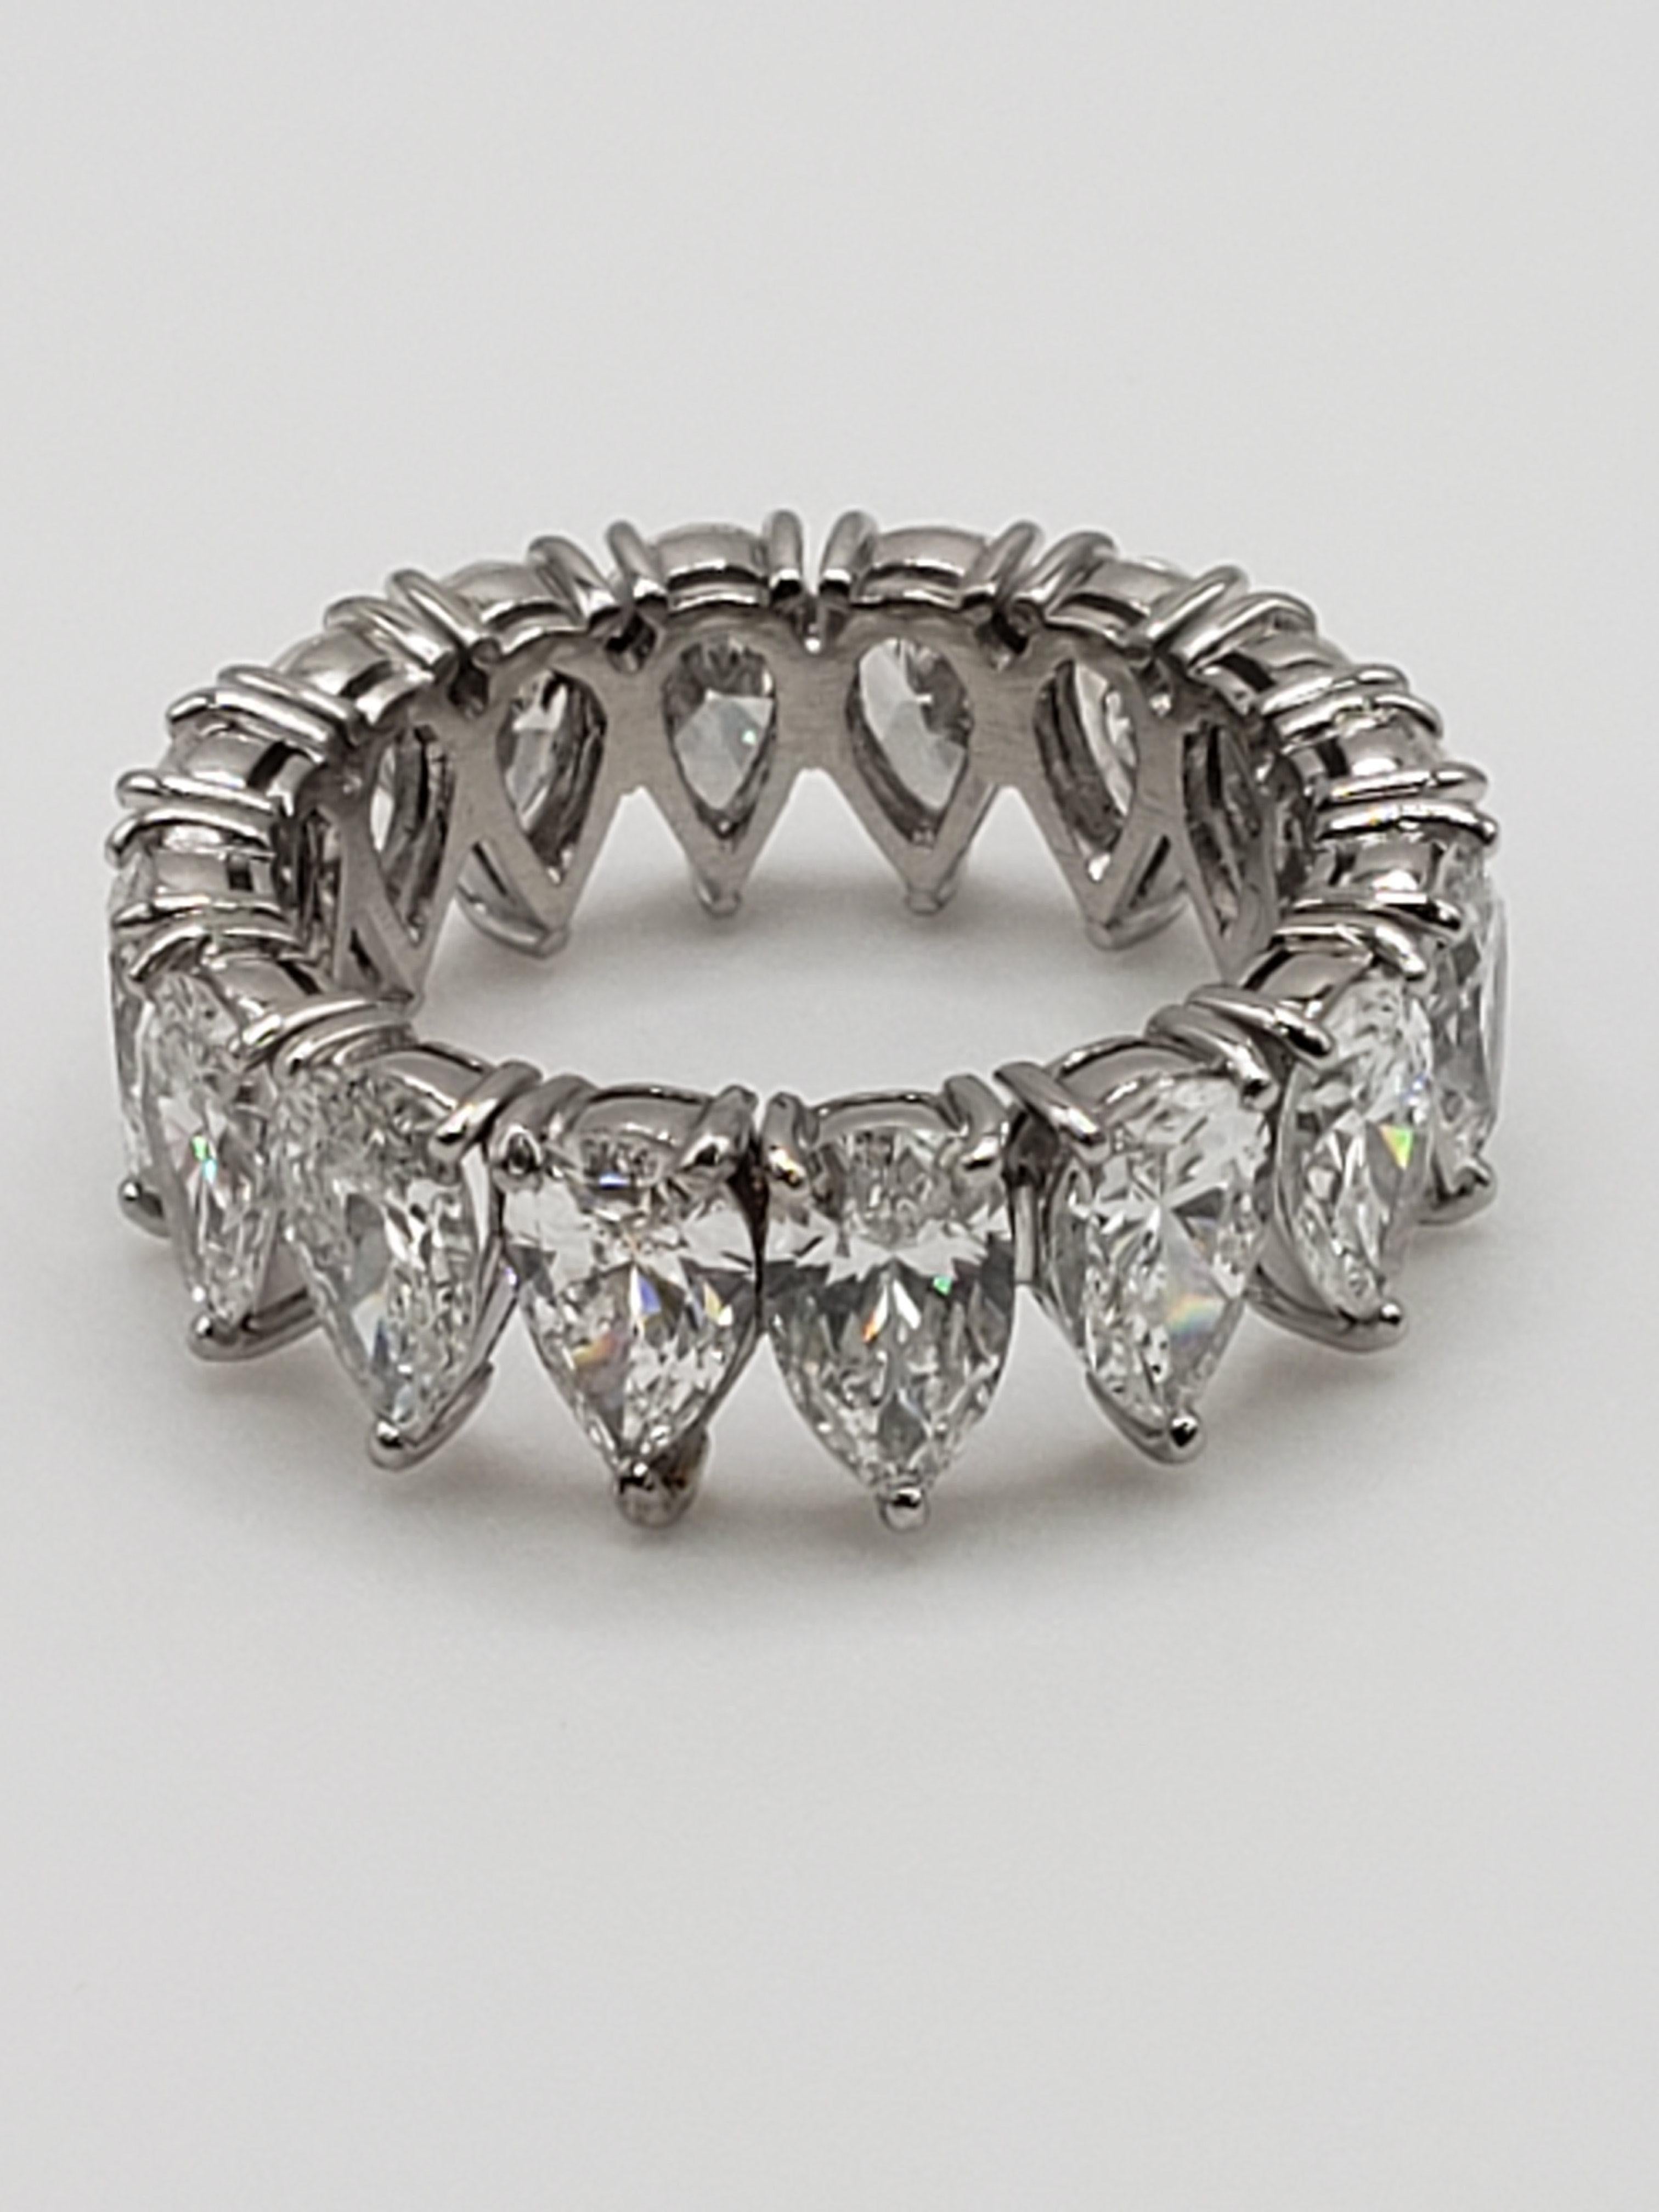 Ein authentischer Diamant- und Platinring, circa 1940/50er Jahre (Retro), handgefertigt, geschmiedet aus Platin, besetzt mit 16 tropfen- bzw. birnenförmigen natürlichen Diamanten, die jeweils etwa 7,00 x 4,50 x 2,70 mm messen. Das Gesamtkaratgewicht